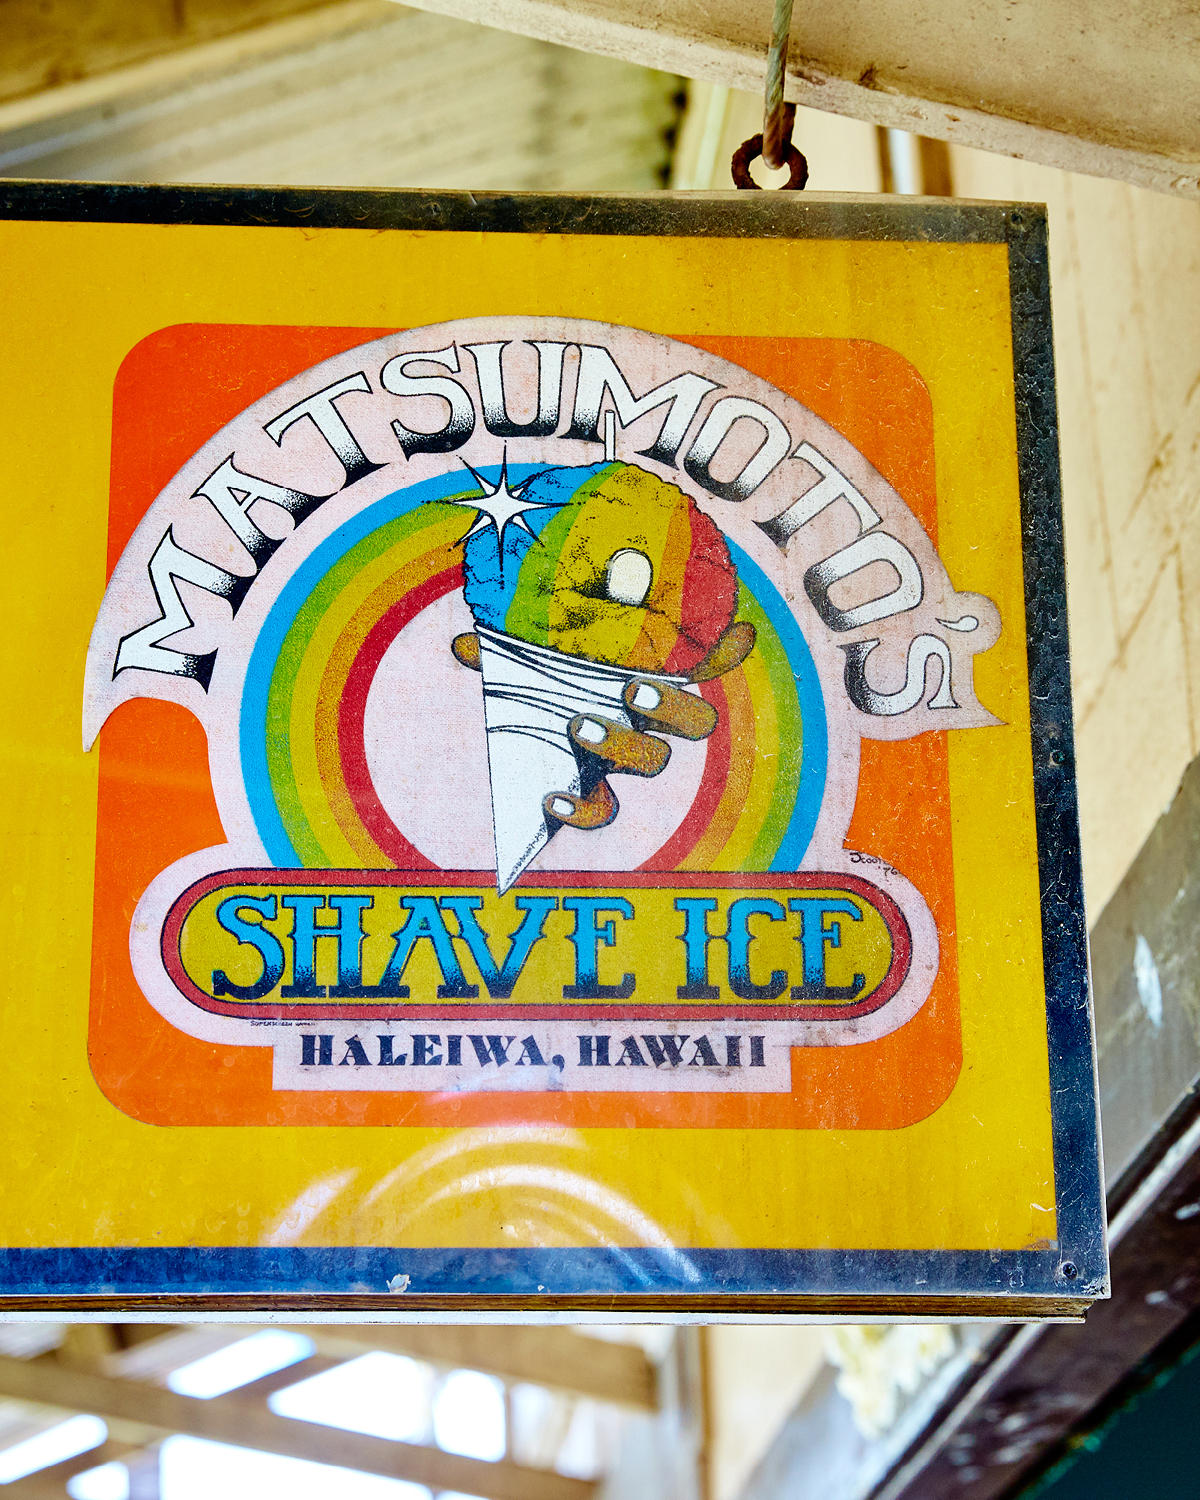  MATSUMOTO'S SHAVE ICE, HALE'IWA 